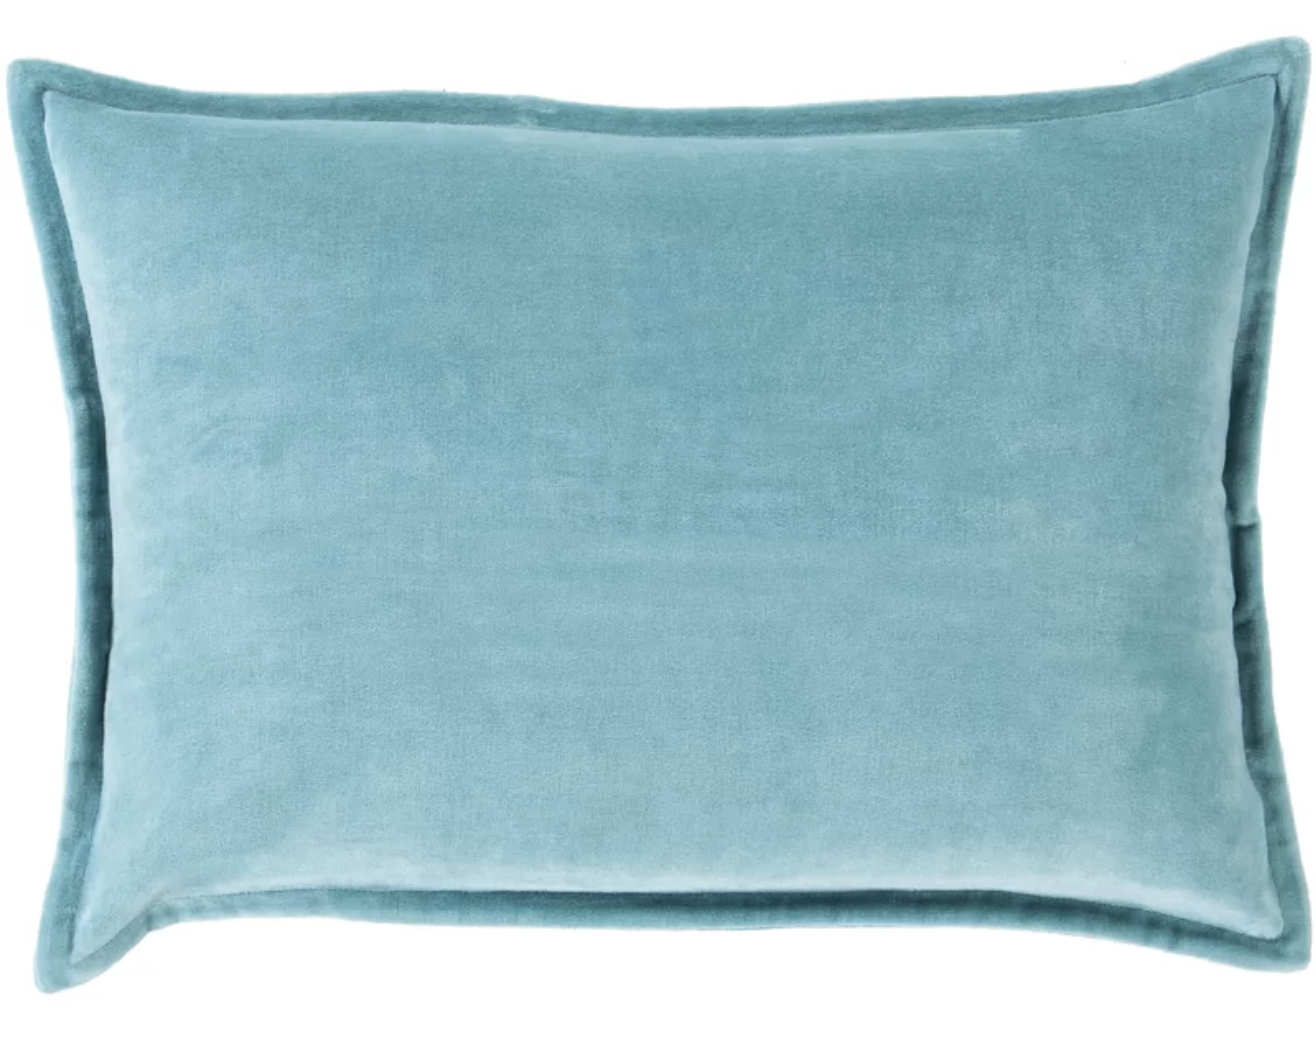 Aqua Pillow